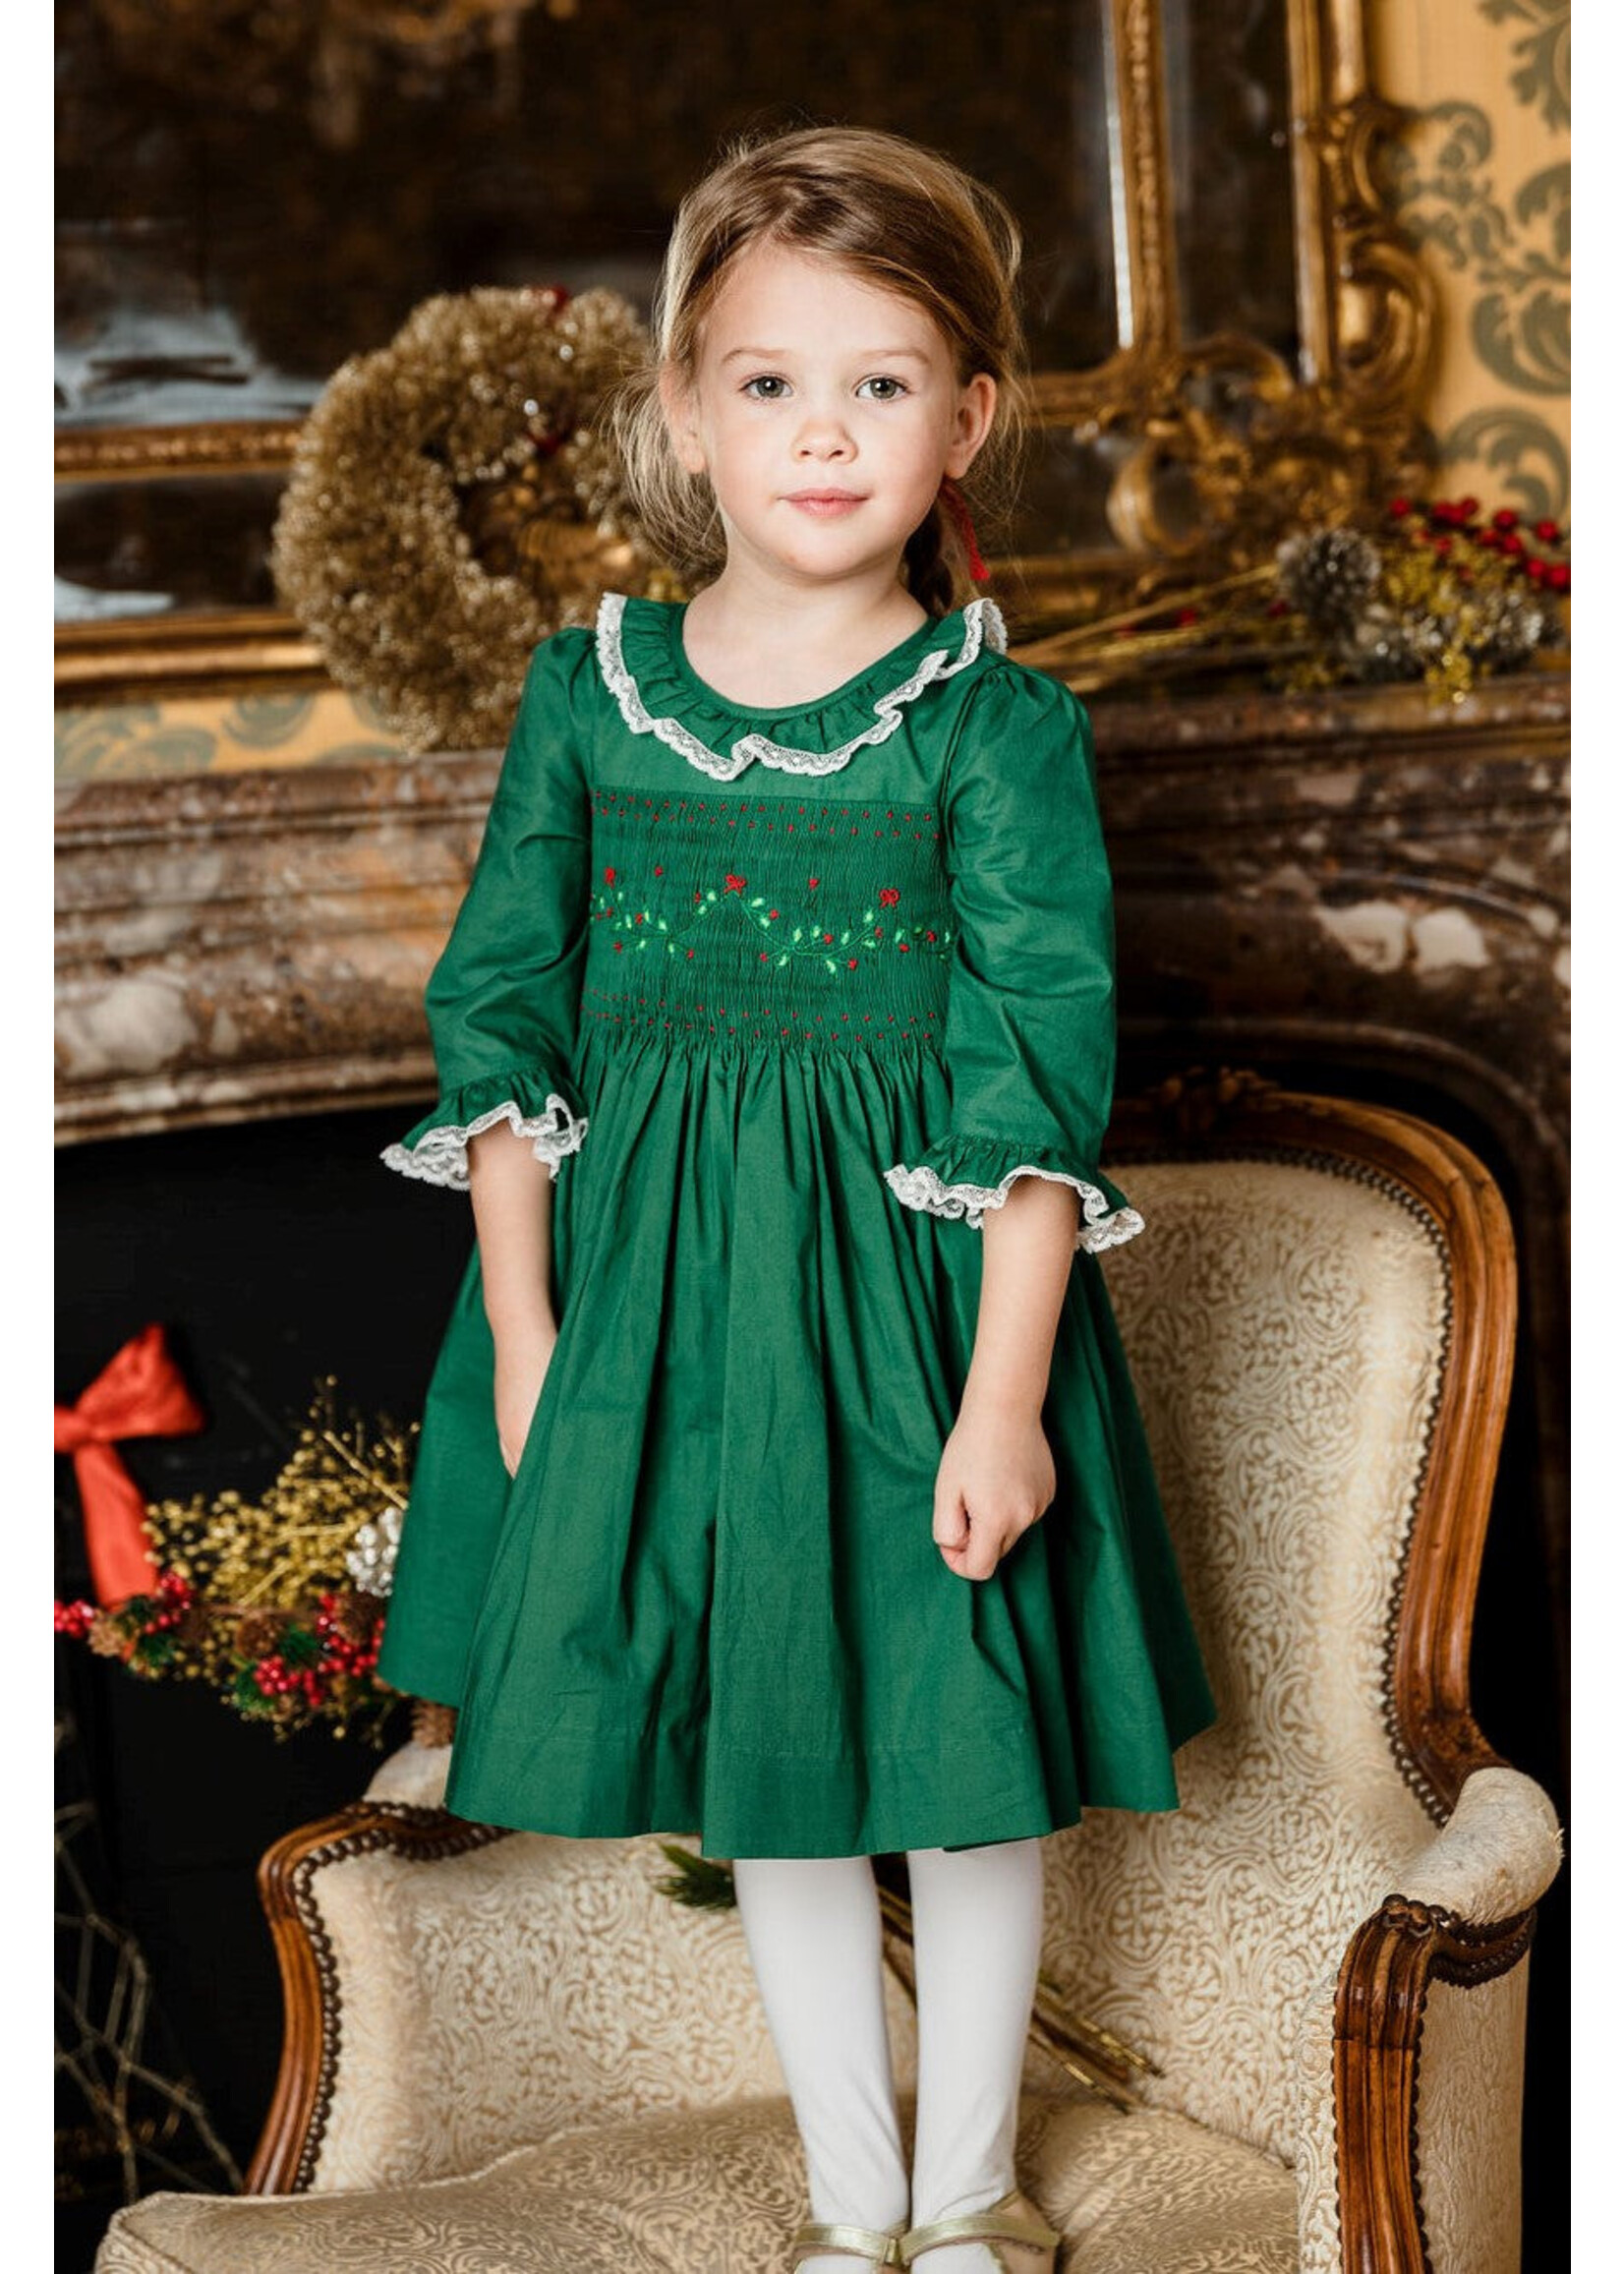 Antoinette Paris Christmas Long Sleeve Dress - Margaret Green